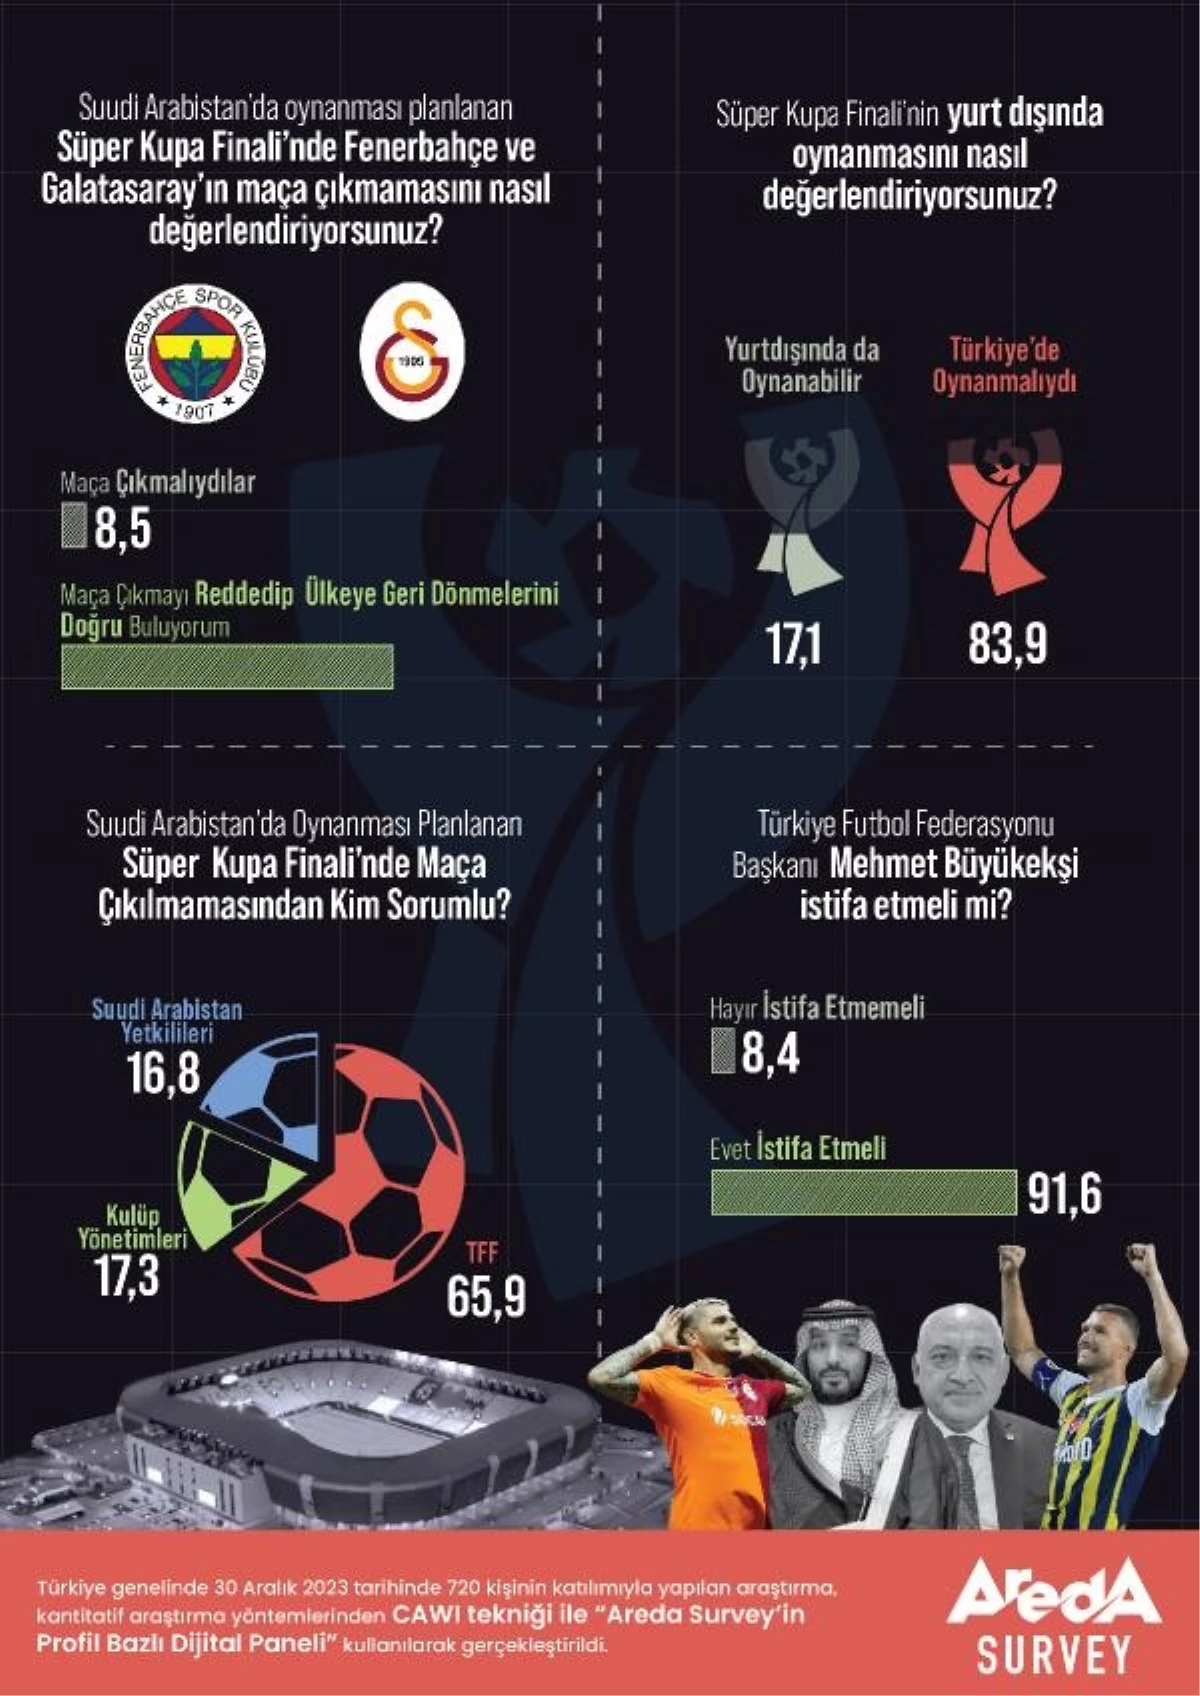 Türkiye Süper Kupa Finali Türkiye’de Oynanmalıydı